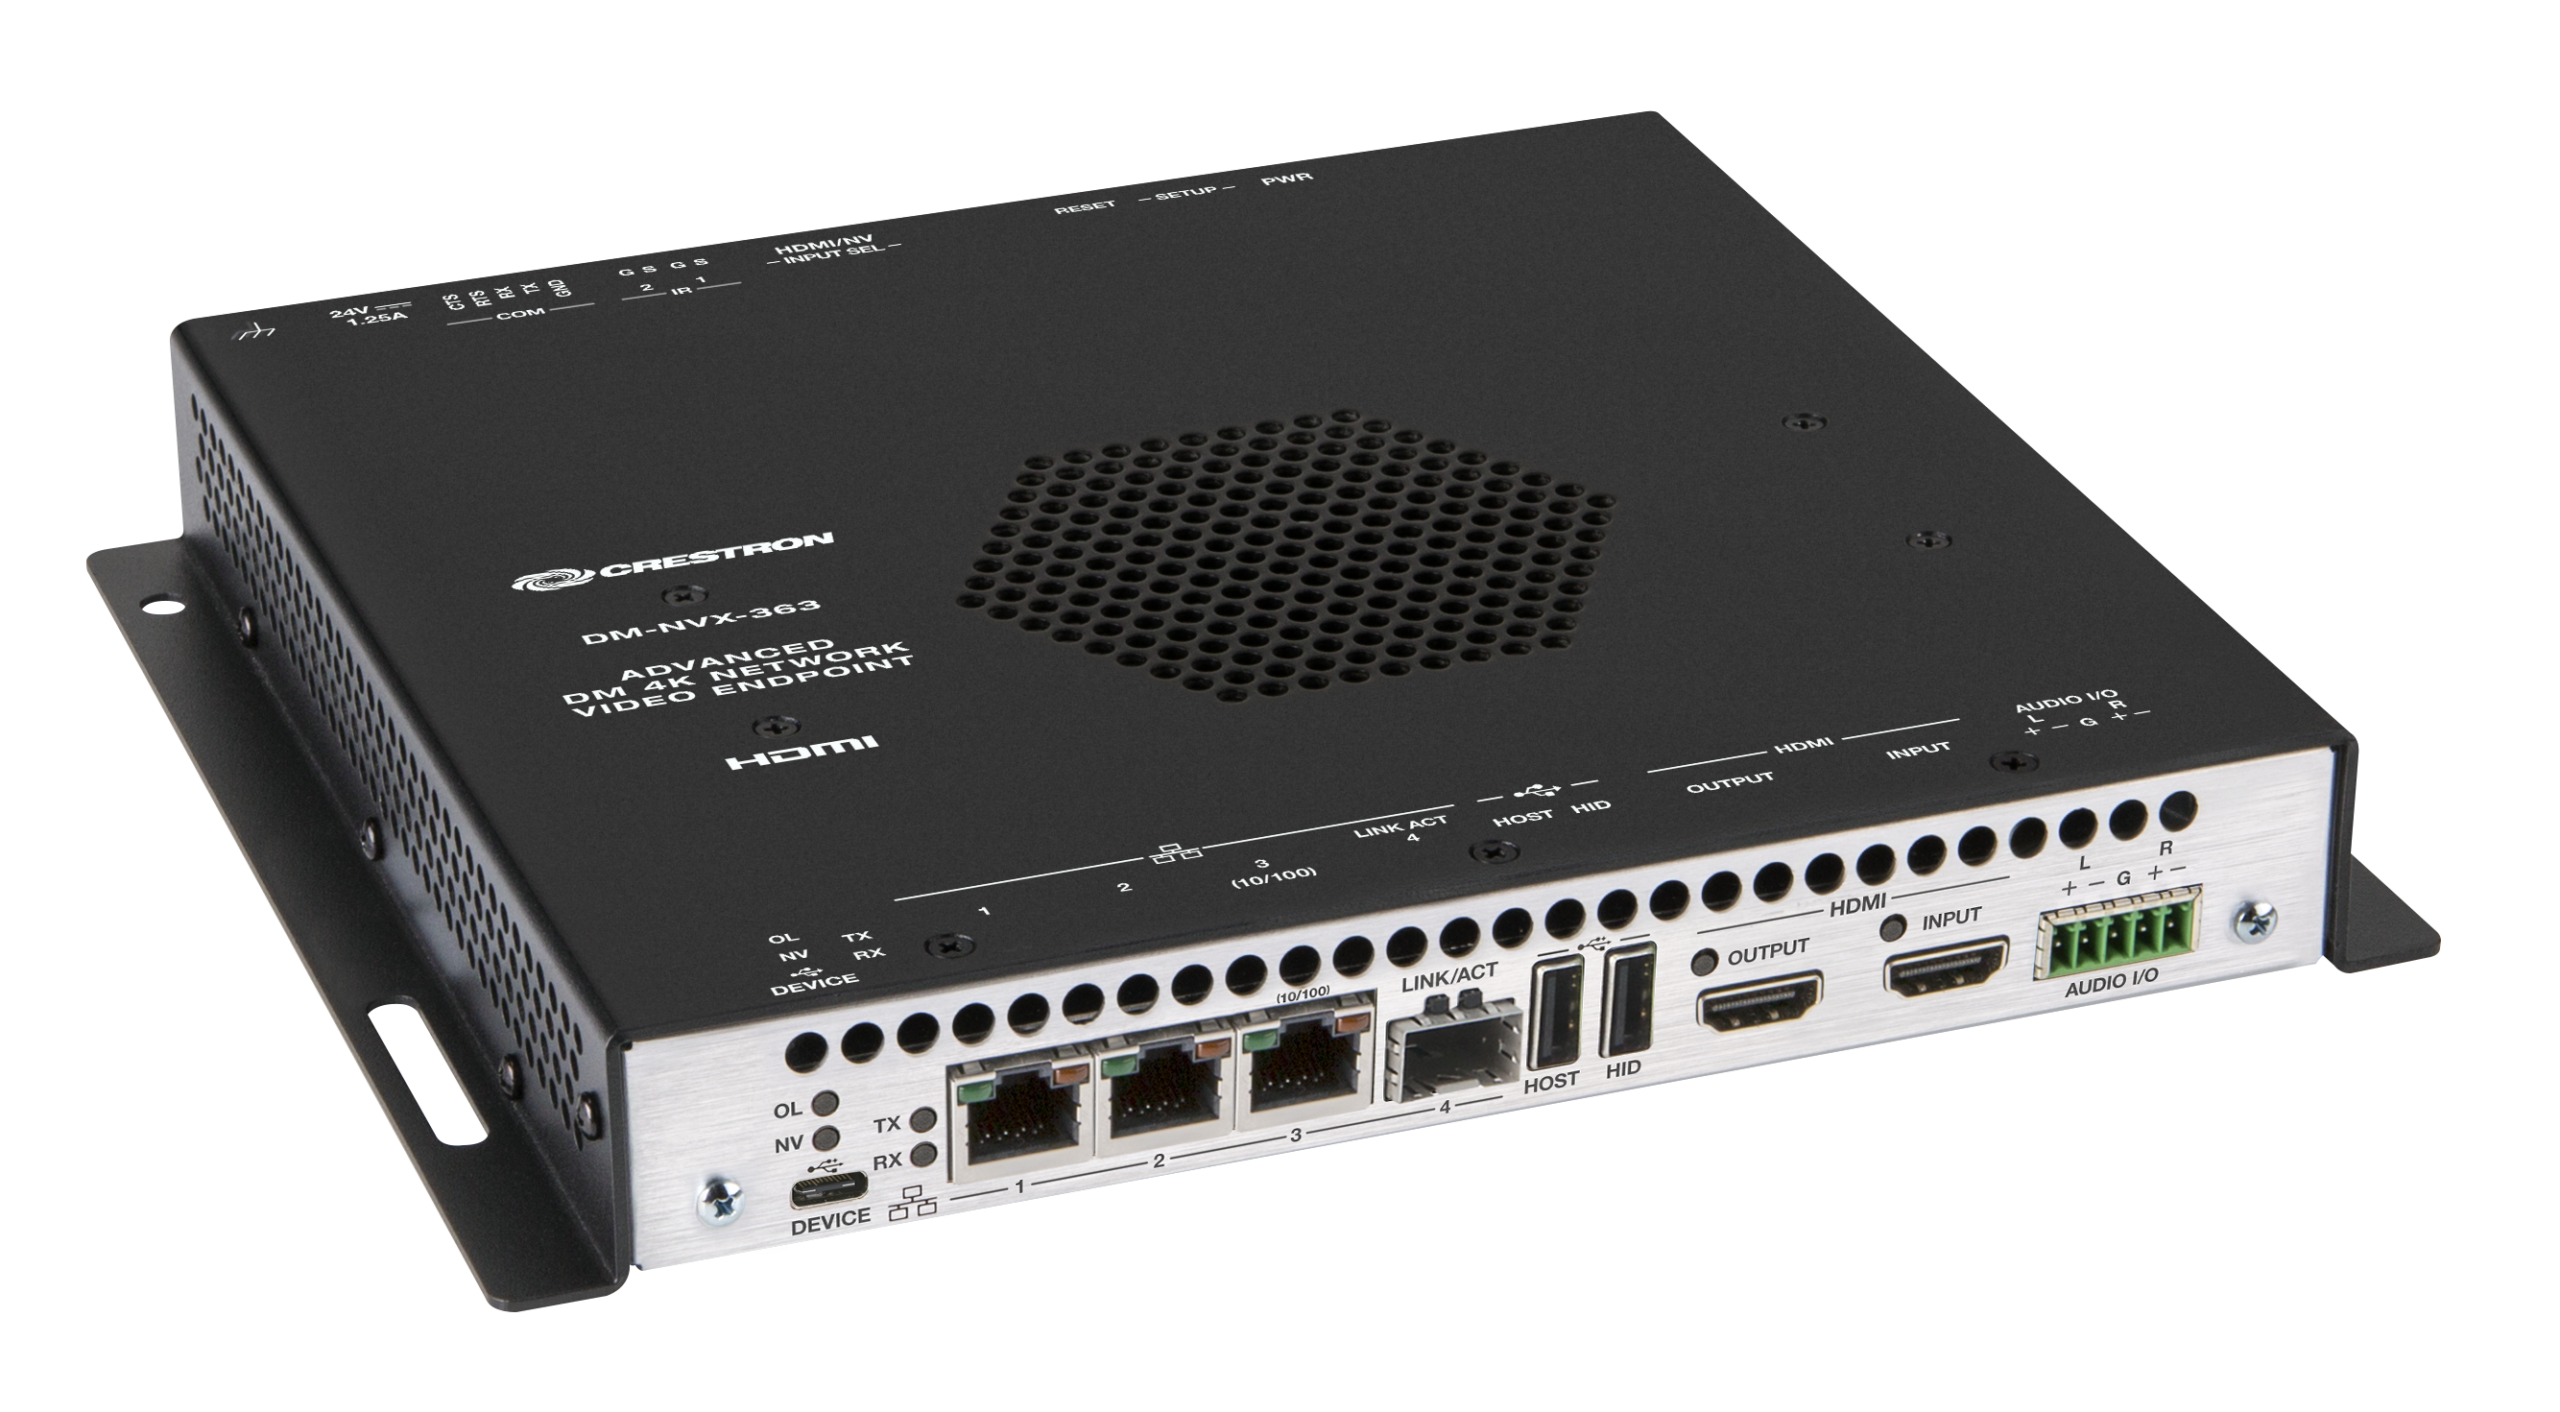 Crestron DM-NVX-363 HDR Network AV Encoder/Decoder